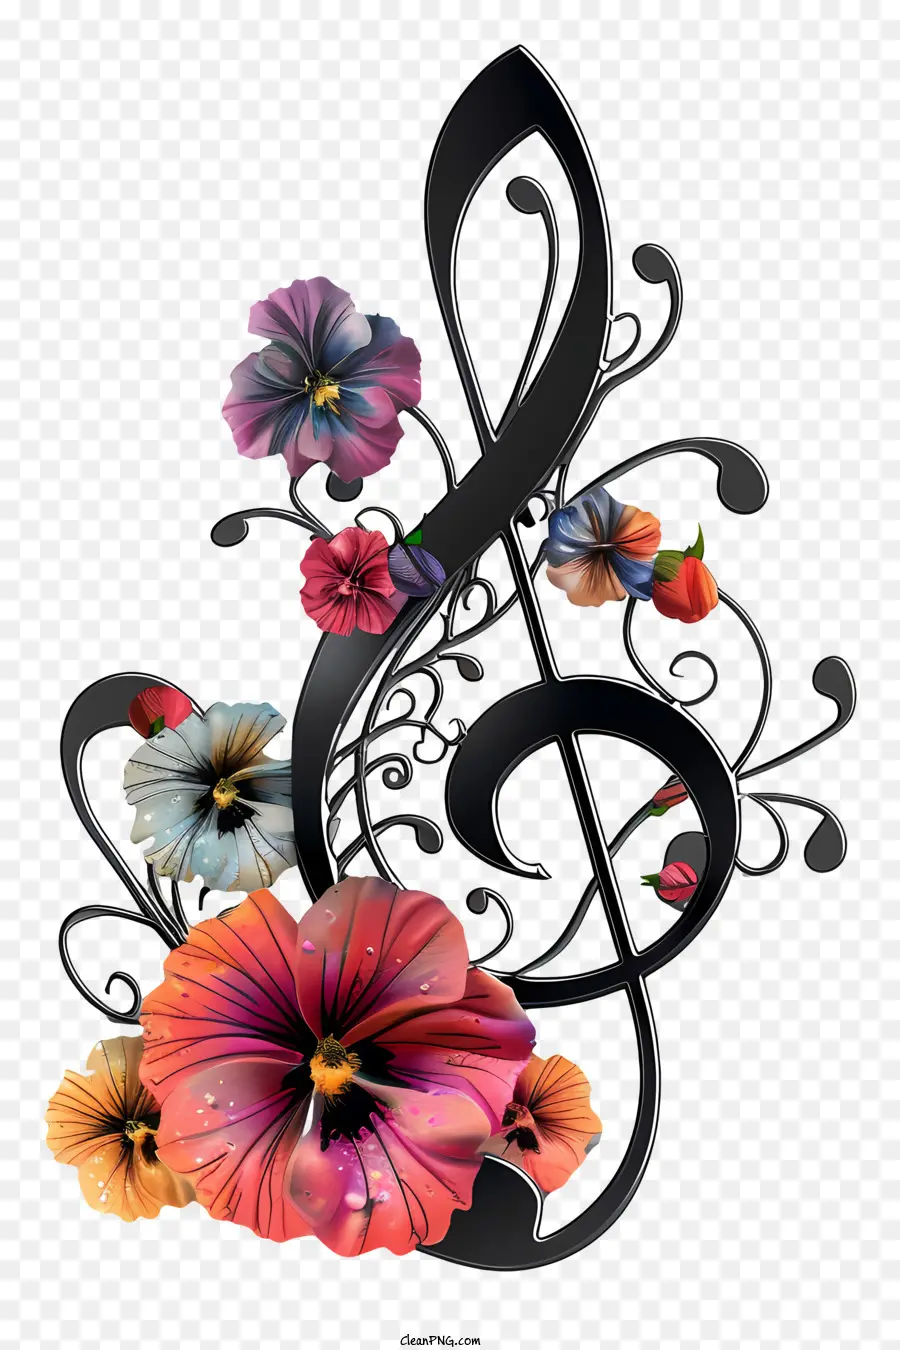 nốt nhạc - Bản nhạc bạc với các yếu tố hoa và màu sắc